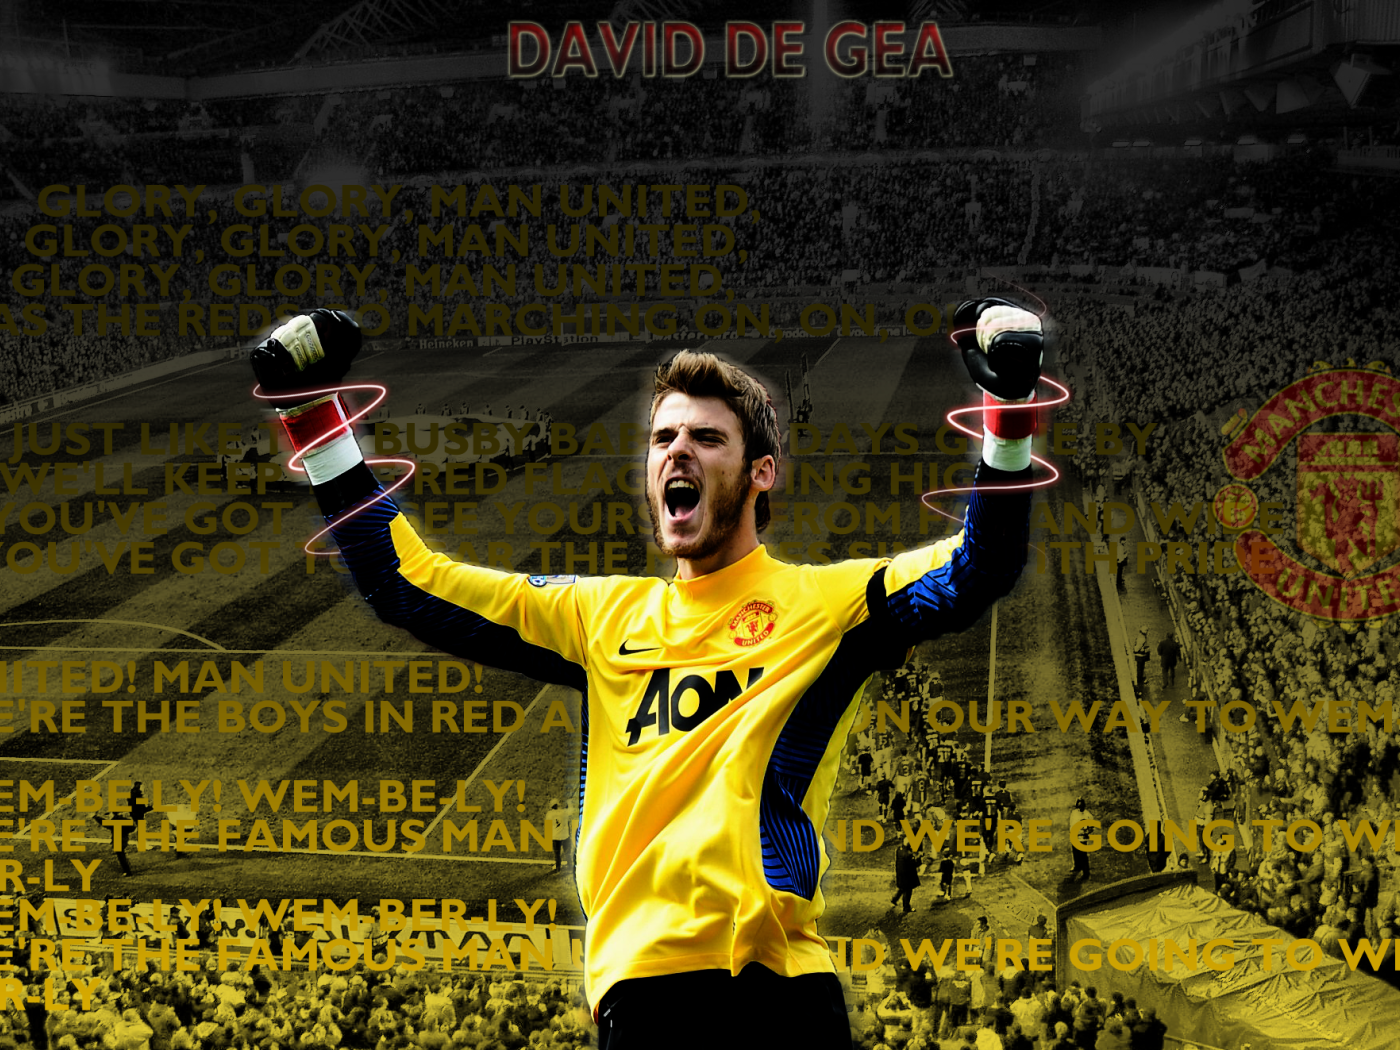 The best goalkeeper of Manchester United David De Gea